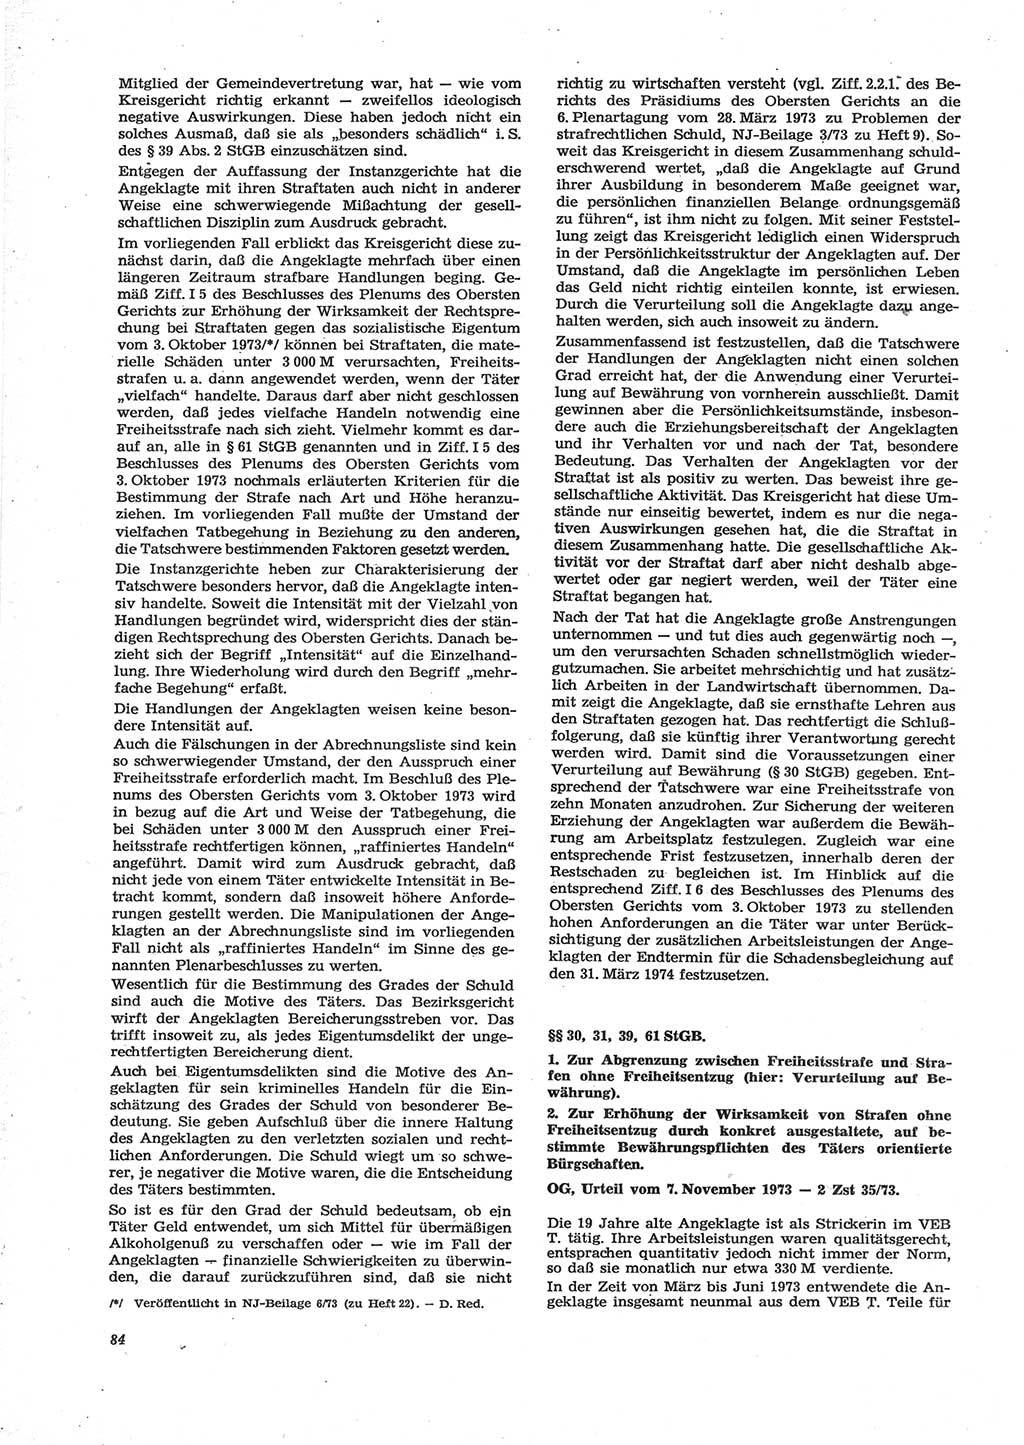 Neue Justiz (NJ), Zeitschrift für Recht und Rechtswissenschaft [Deutsche Demokratische Republik (DDR)], 28. Jahrgang 1974, Seite 84 (NJ DDR 1974, S. 84)